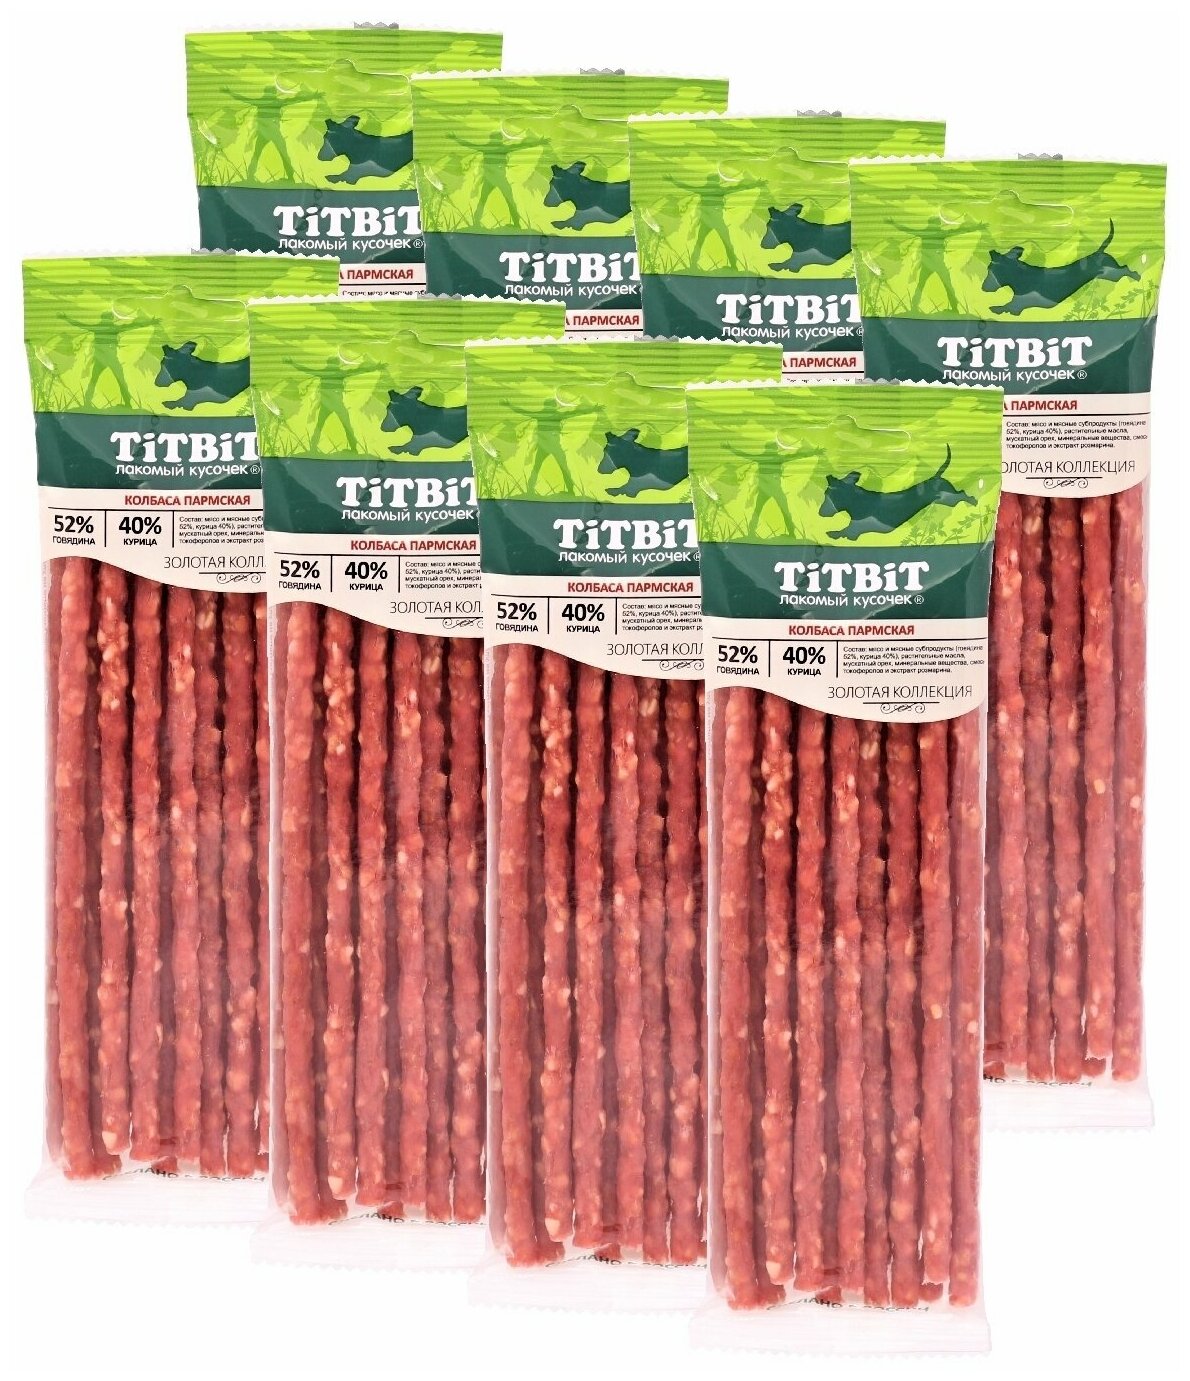 Лакомство TitBit Золотая коллекция для собак "Колбаса Пармская" 80 гх8 упак